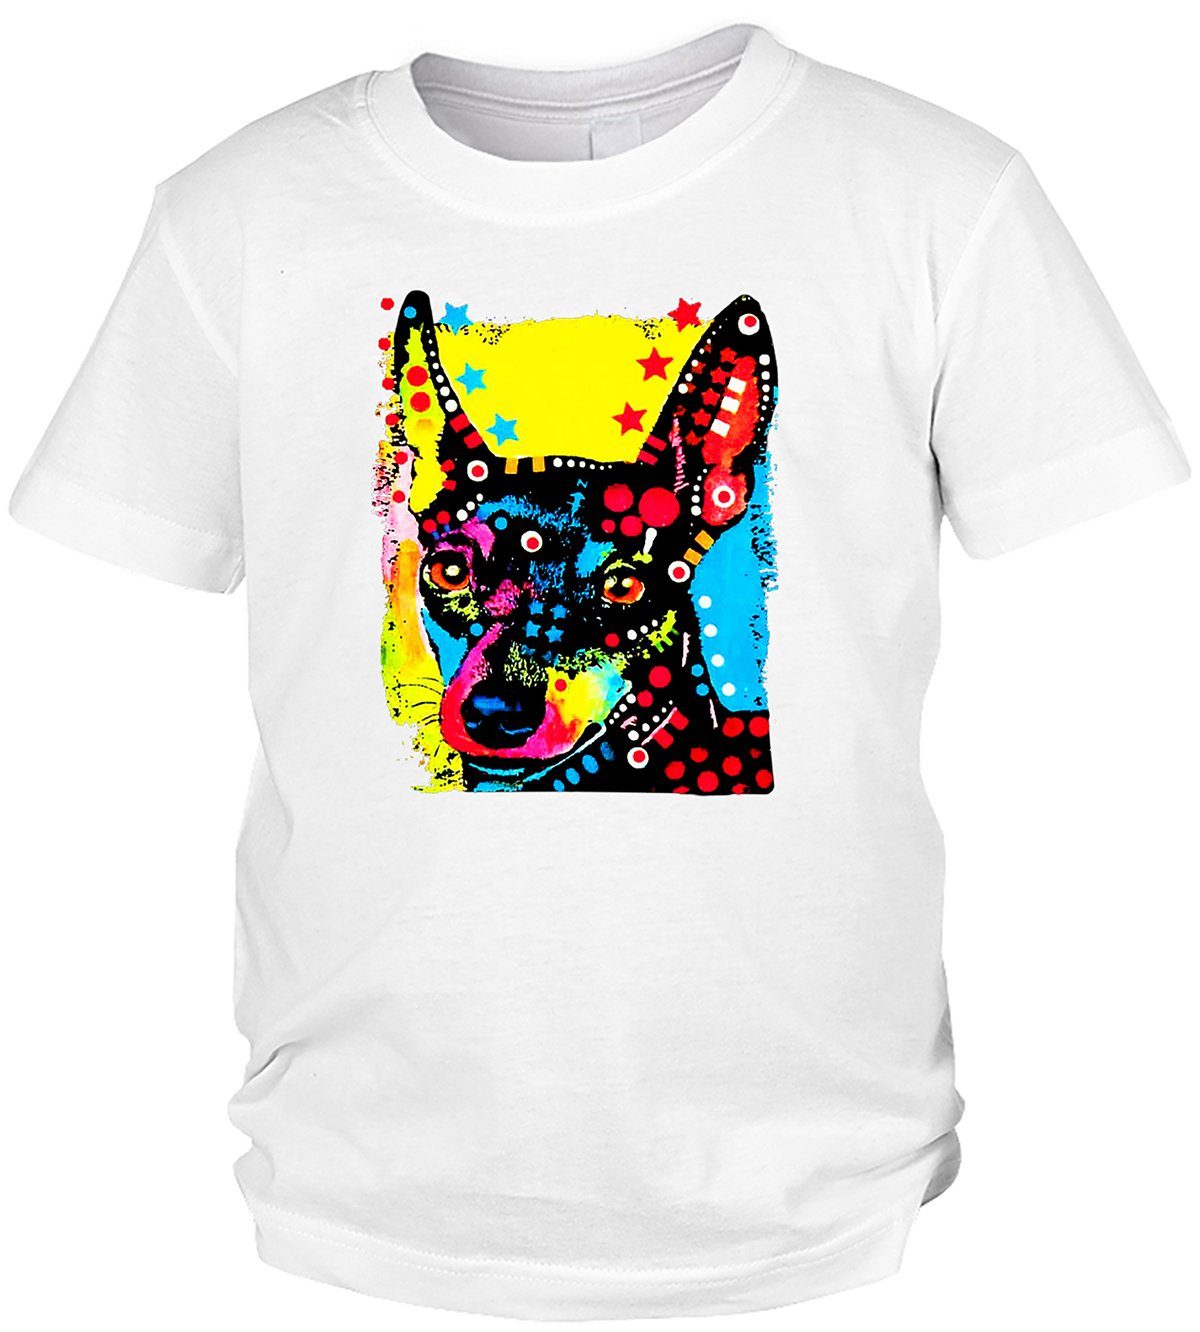 Kinder - Motiv T-Shirt T-Shirt Kindershirt Pinscher Miniature Tini : Hunde buntes Motiv Zwergpinscher Shirts